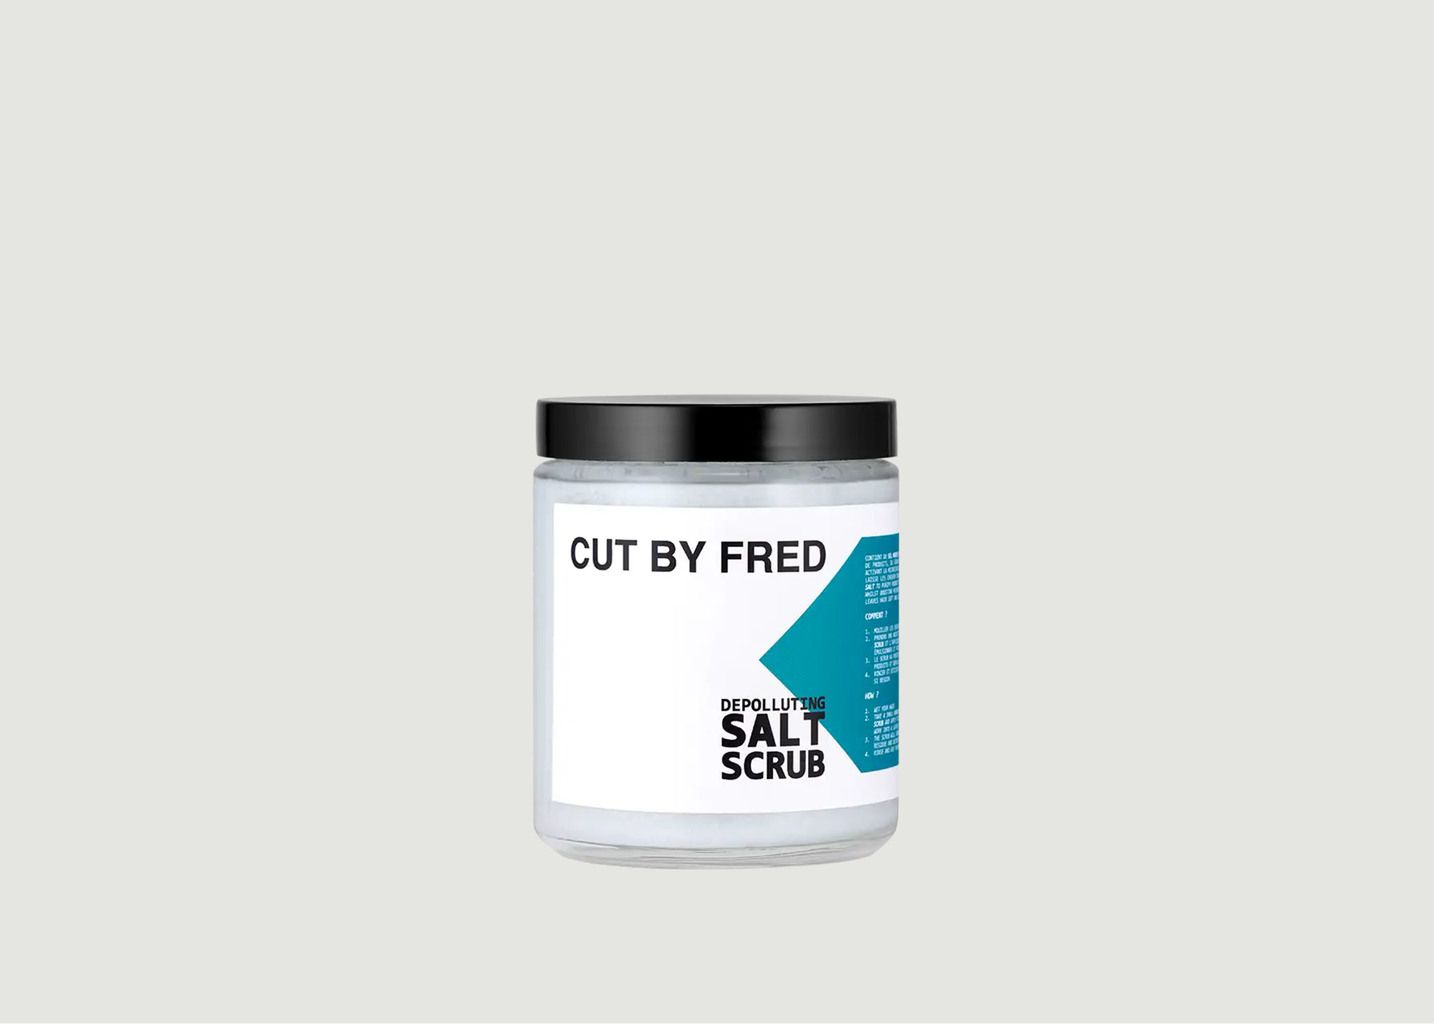 Depolluting Salt Scrub  - Cut by Fred